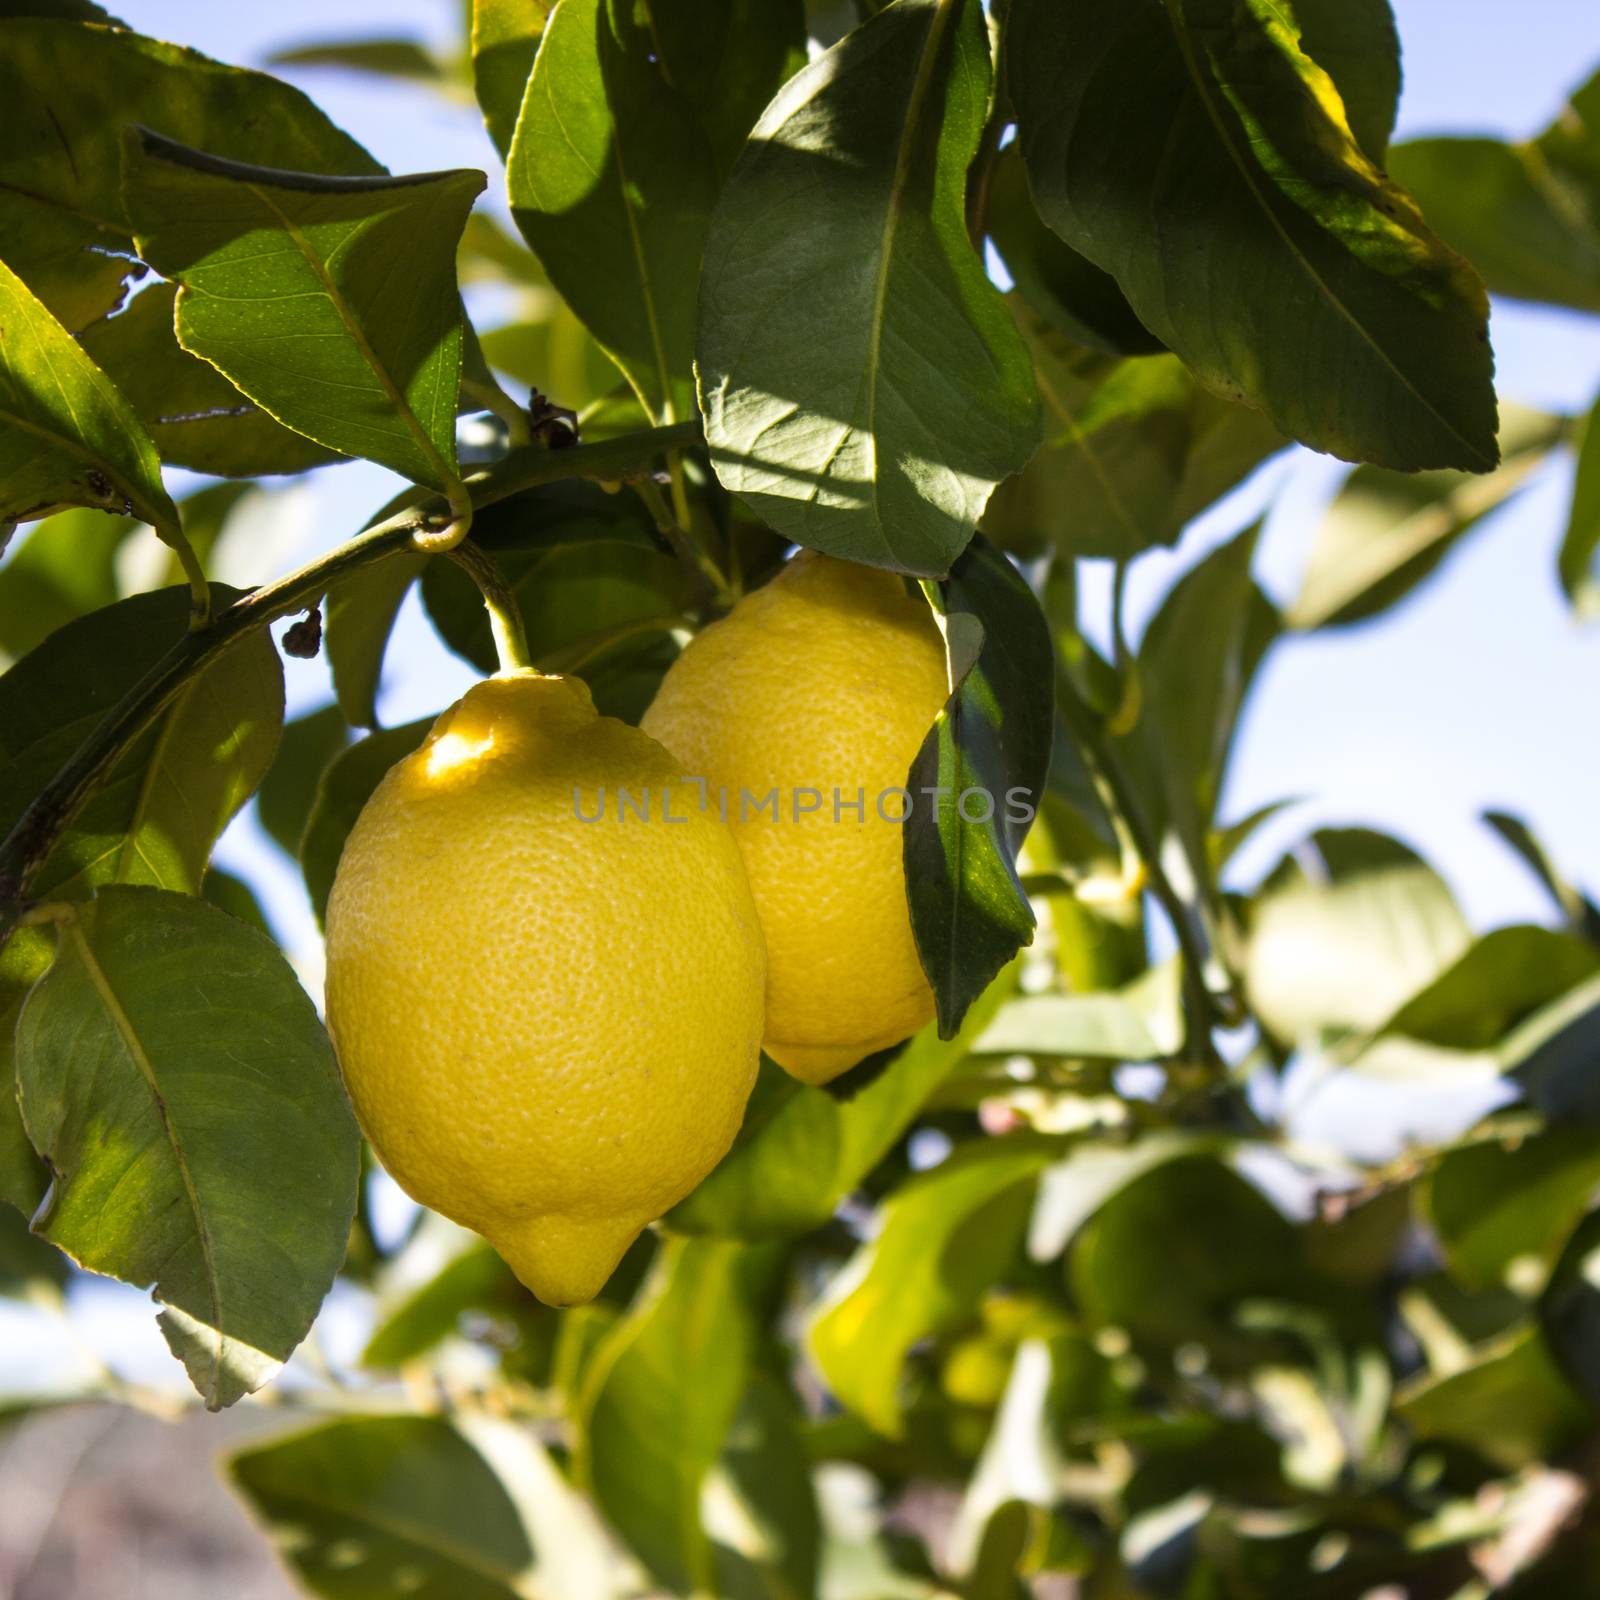  Lemons by goghy73